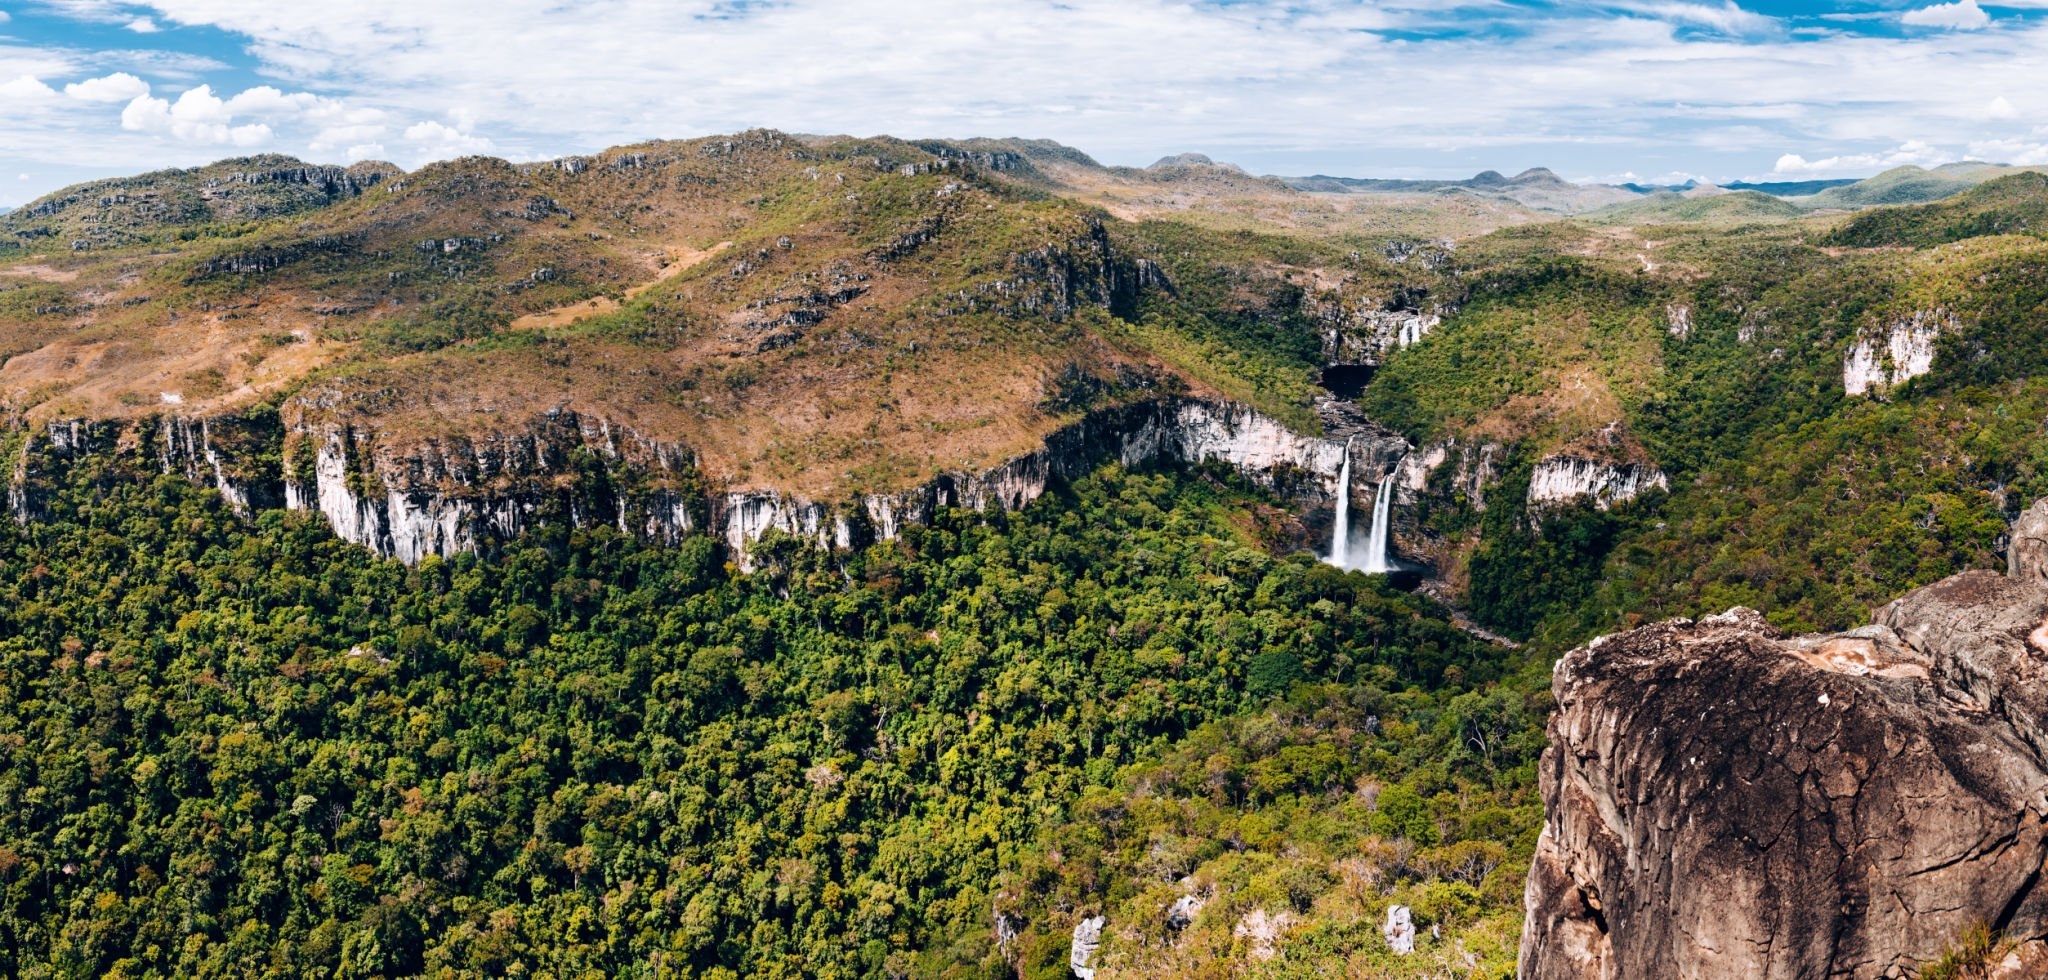 Ecoturismo em Goiás: conheça destinos sustentáveis para visitar